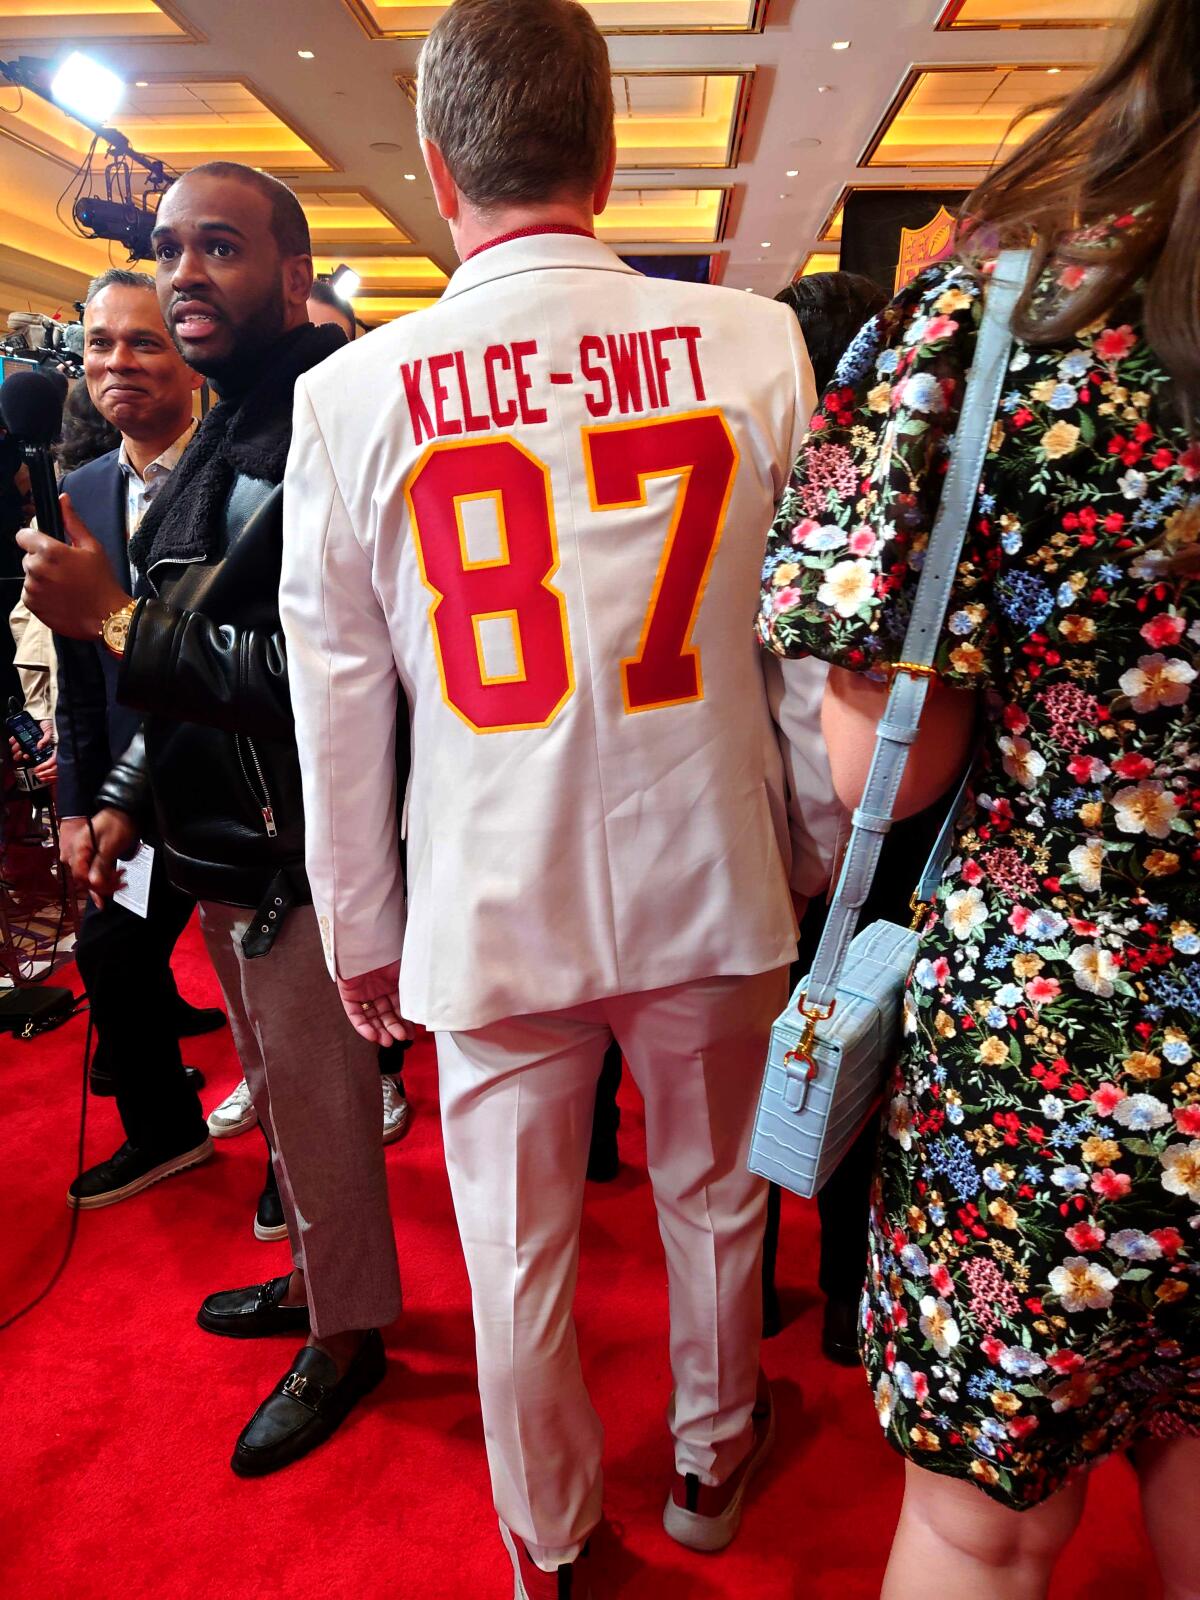 Curtis Unfried, um fã de futebol de Winnipeg, Canadá, criou um terno Swift-Kells personalizado para usar na semana do Super Bowl.